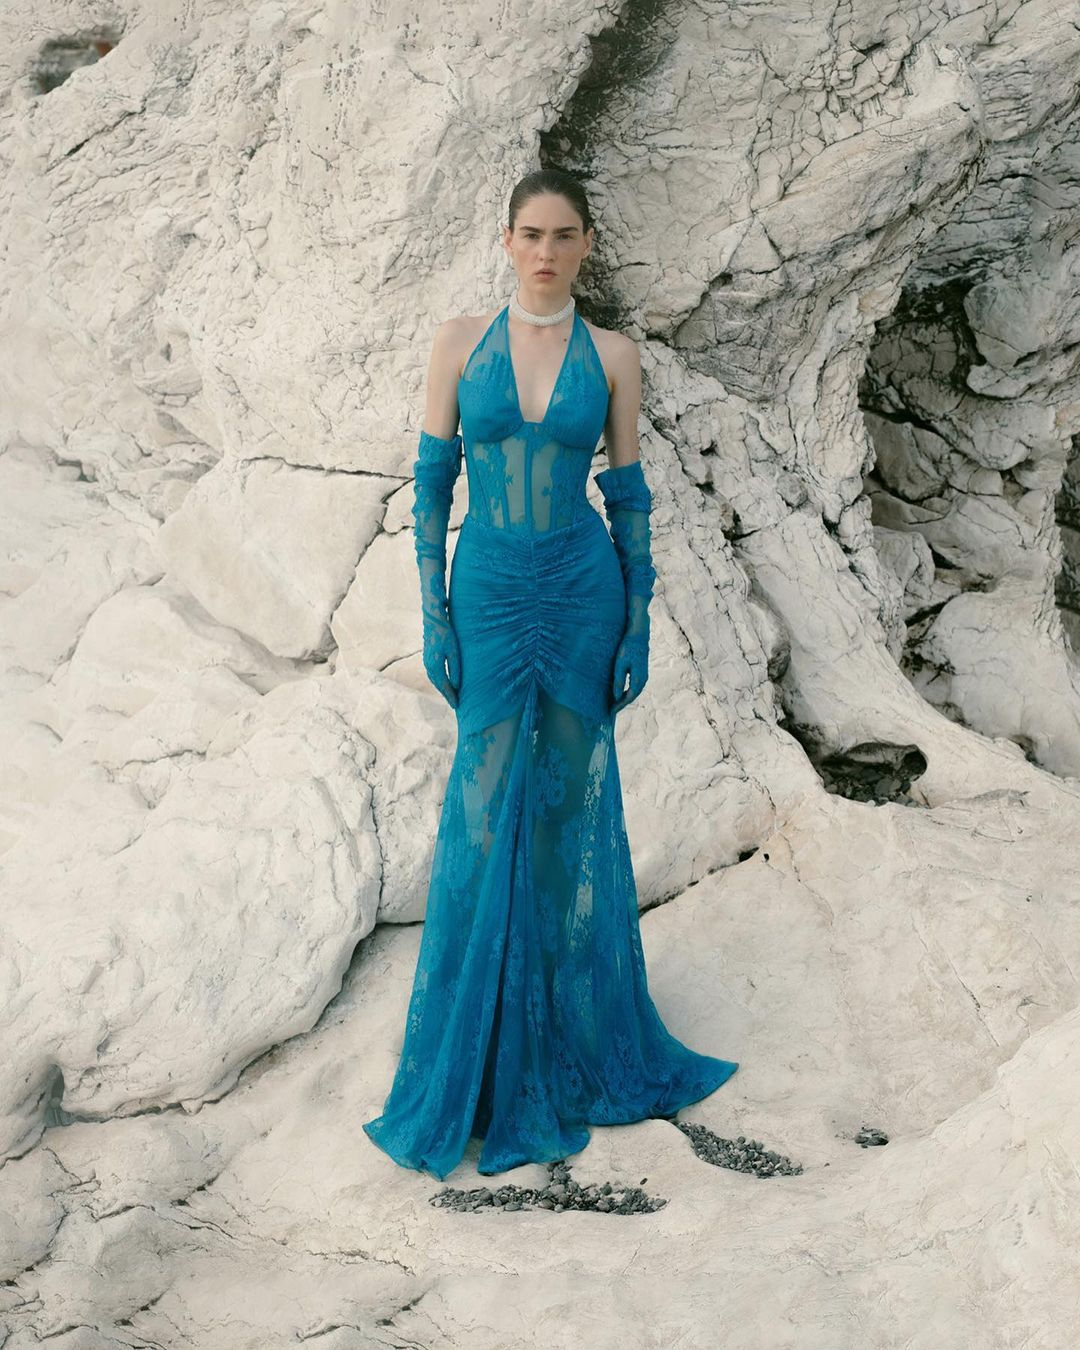 Elegant Photoshoot Ideas | Amazon Gown Collection - YouTube